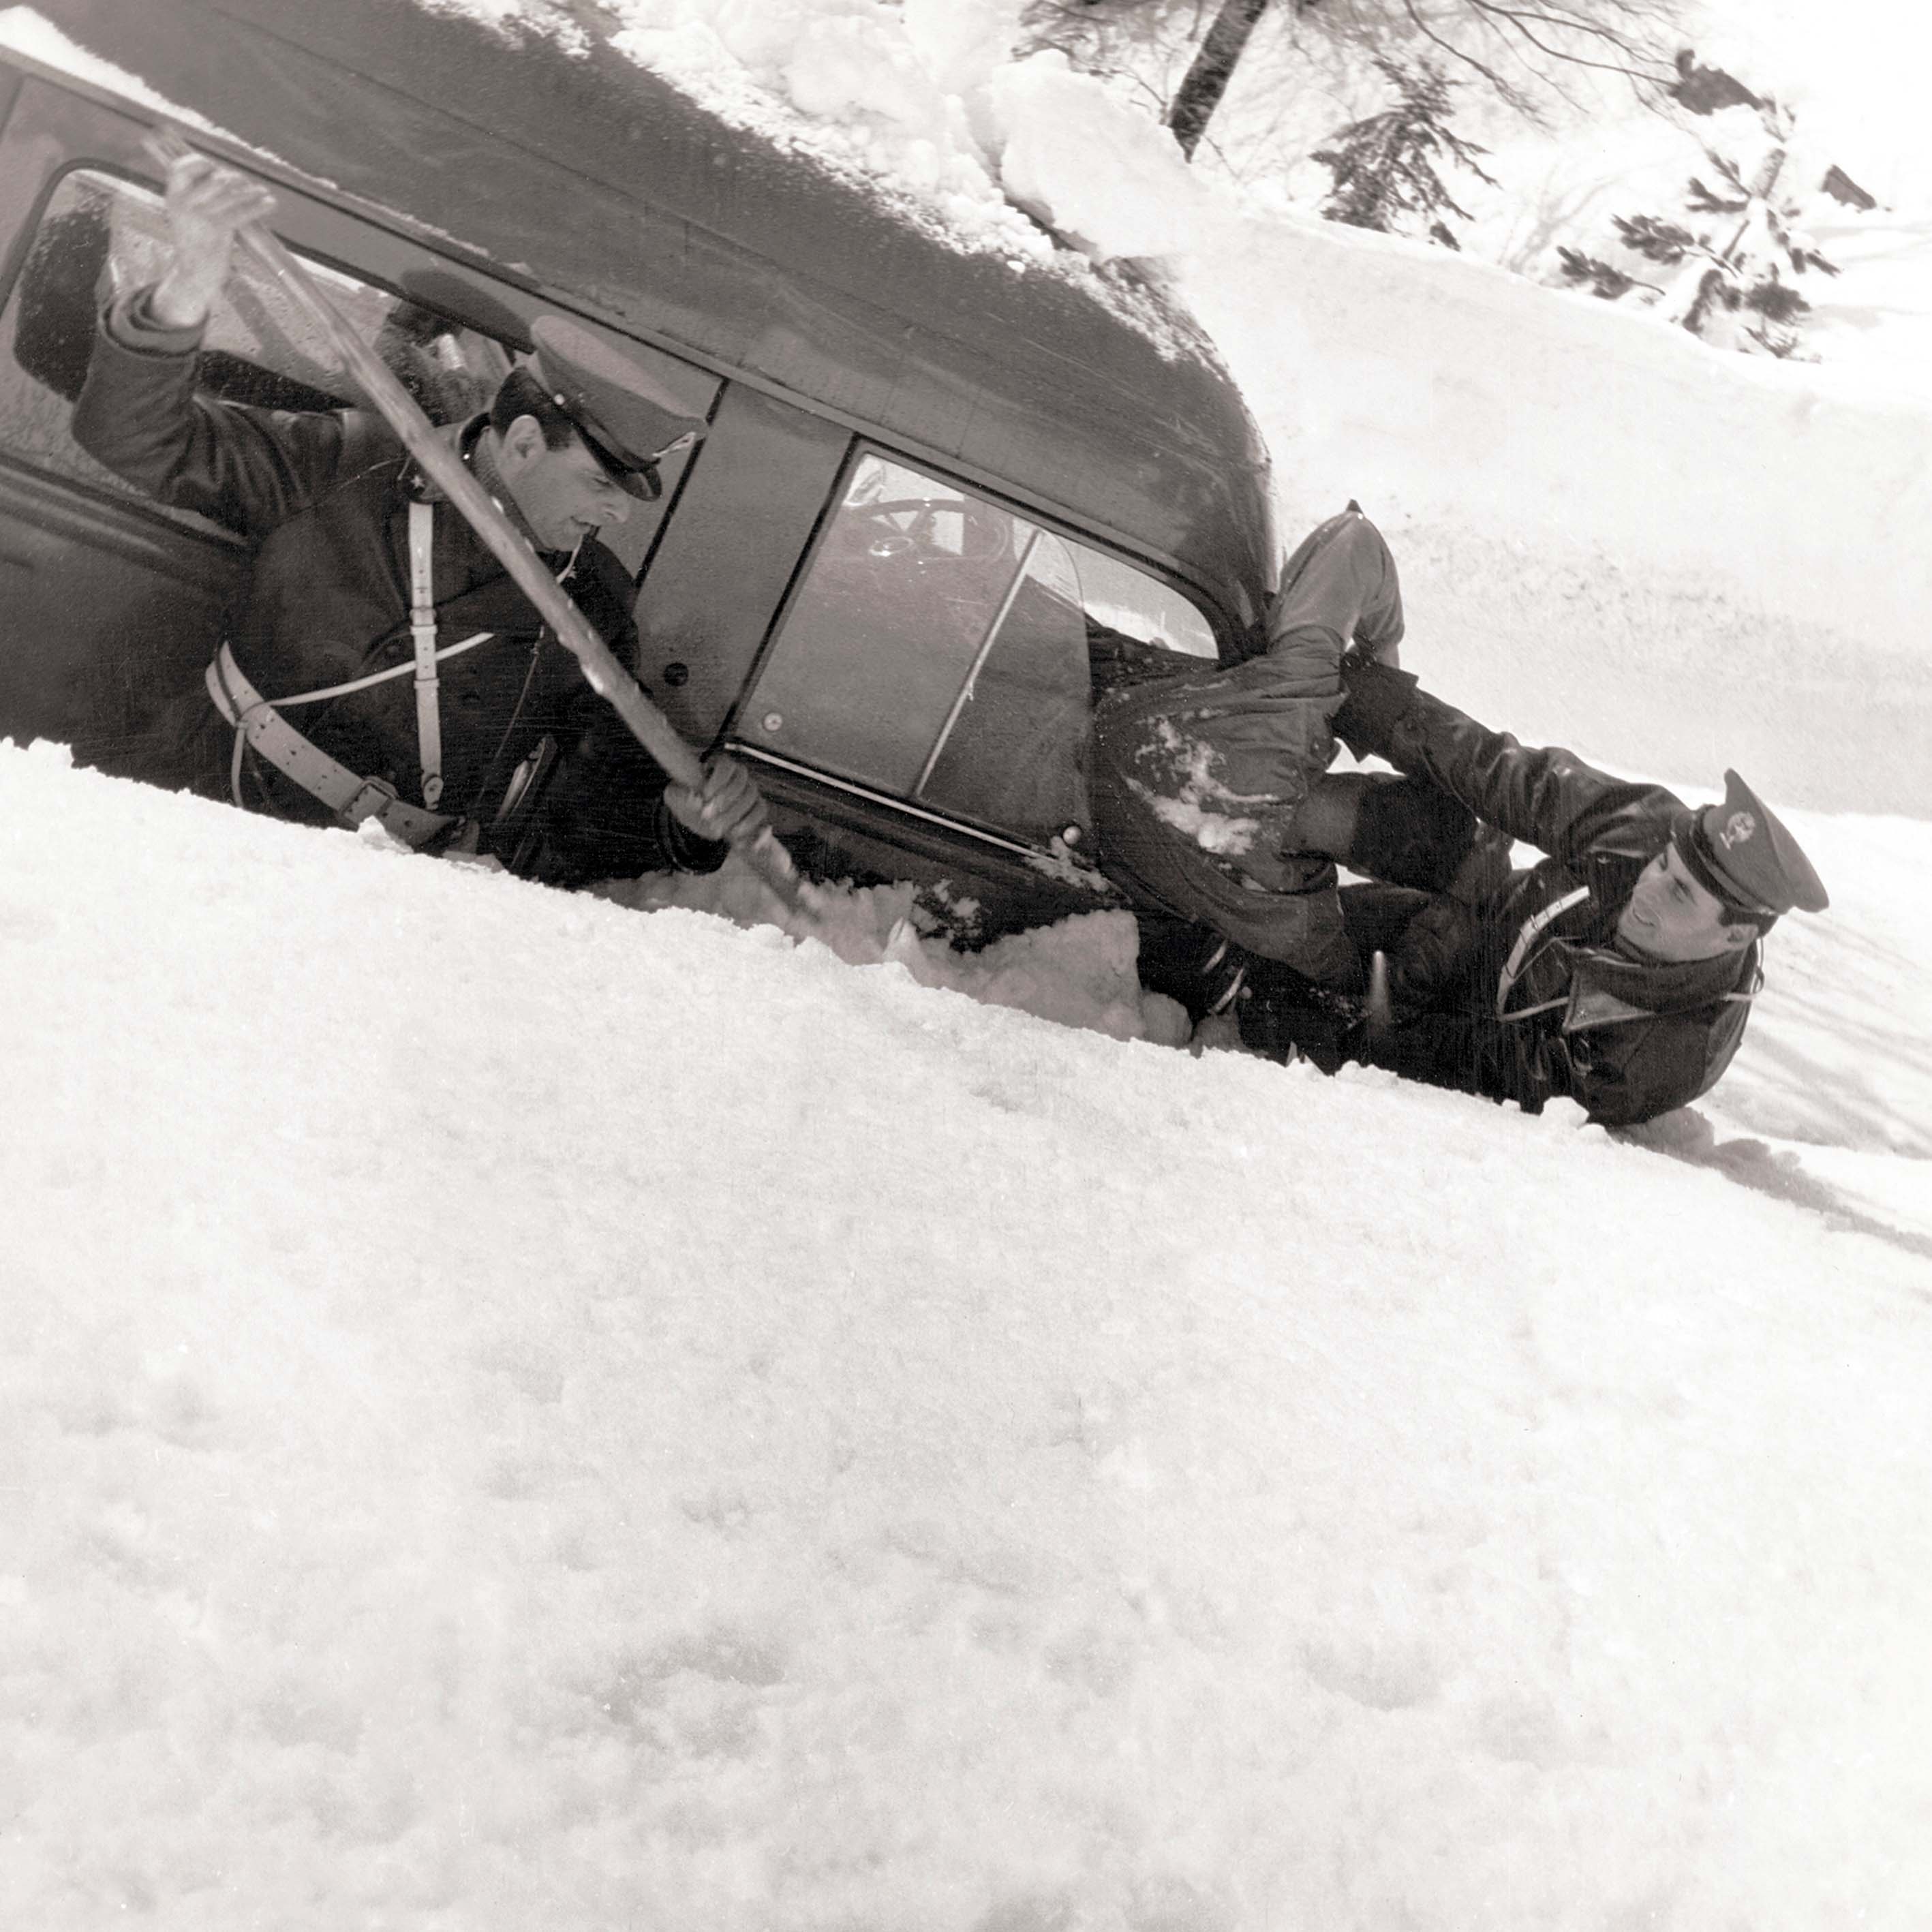 1970, operatori impegnati in servizio di assistenza alla popolazione isolata dalle forti nevicate